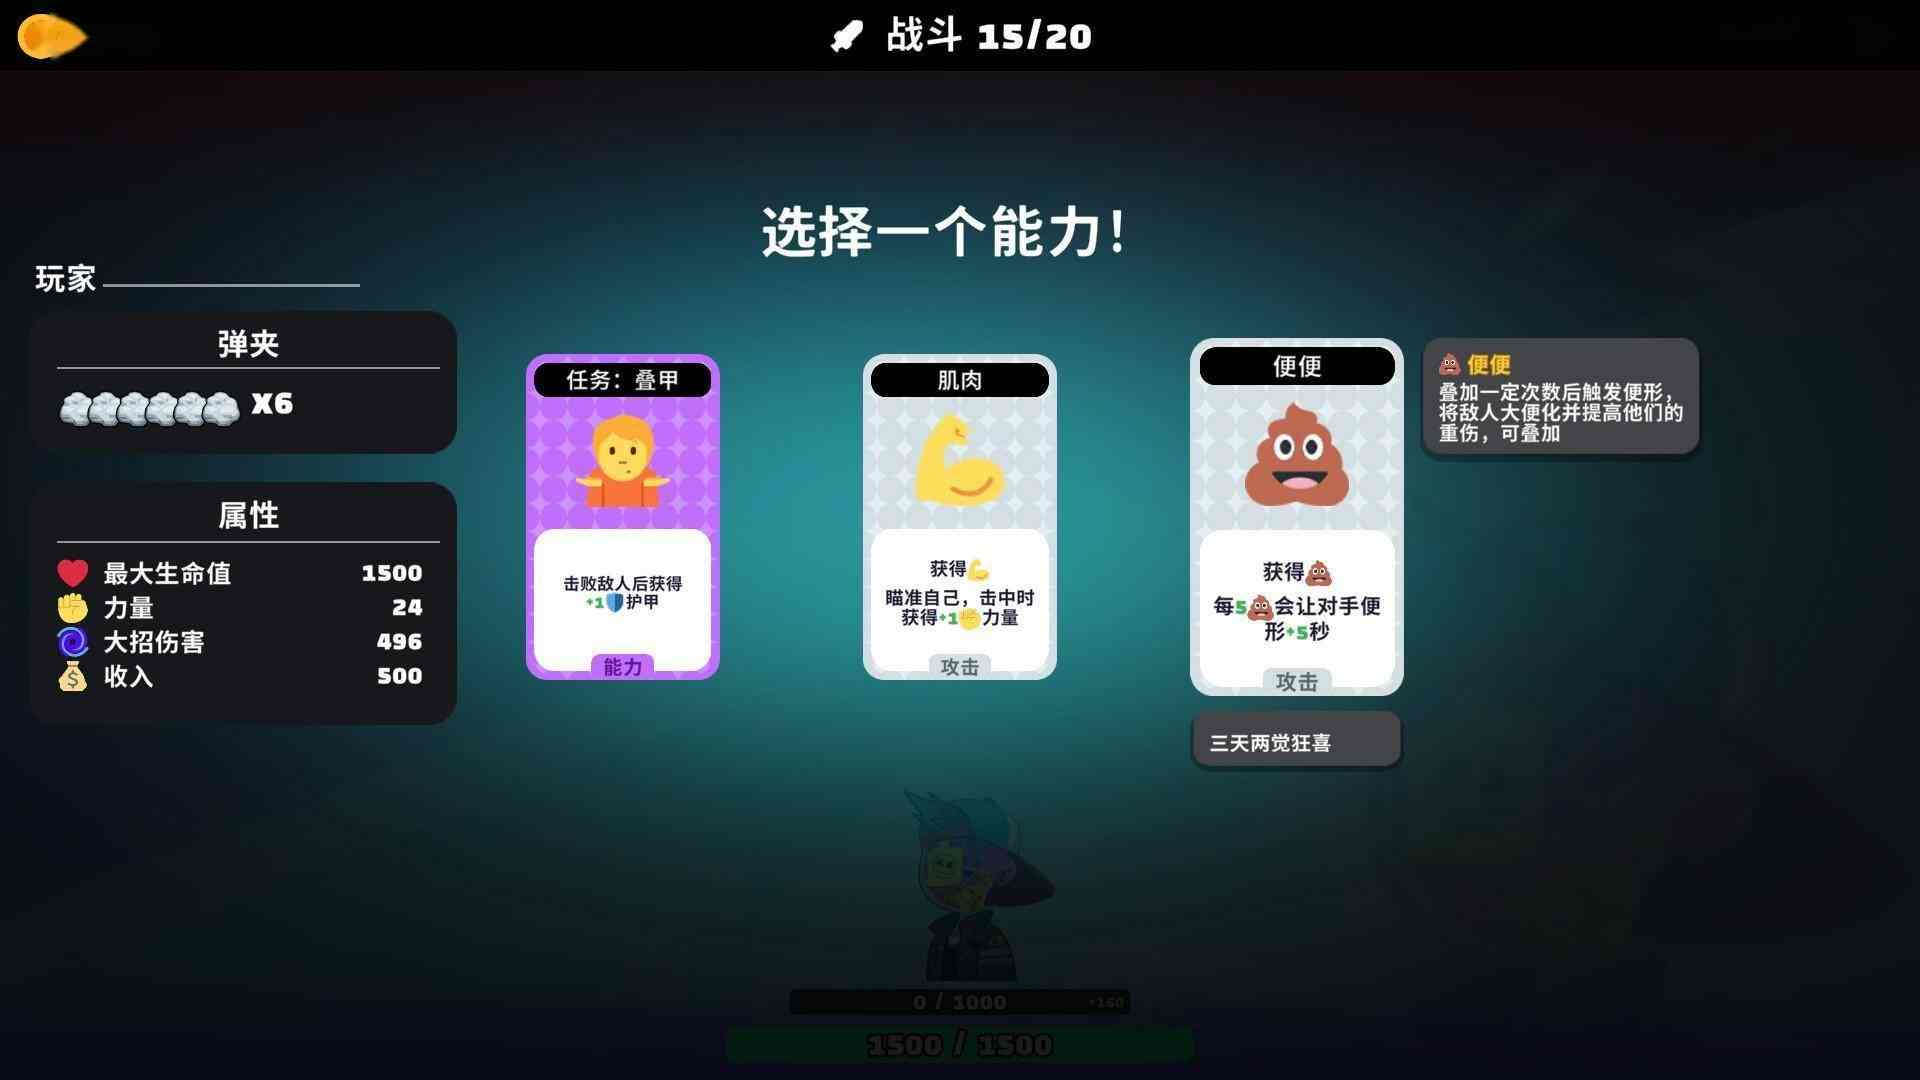 中文互联网梗大杂烩恶搞游戏《超级键盘侠》现已推出试玩Demo